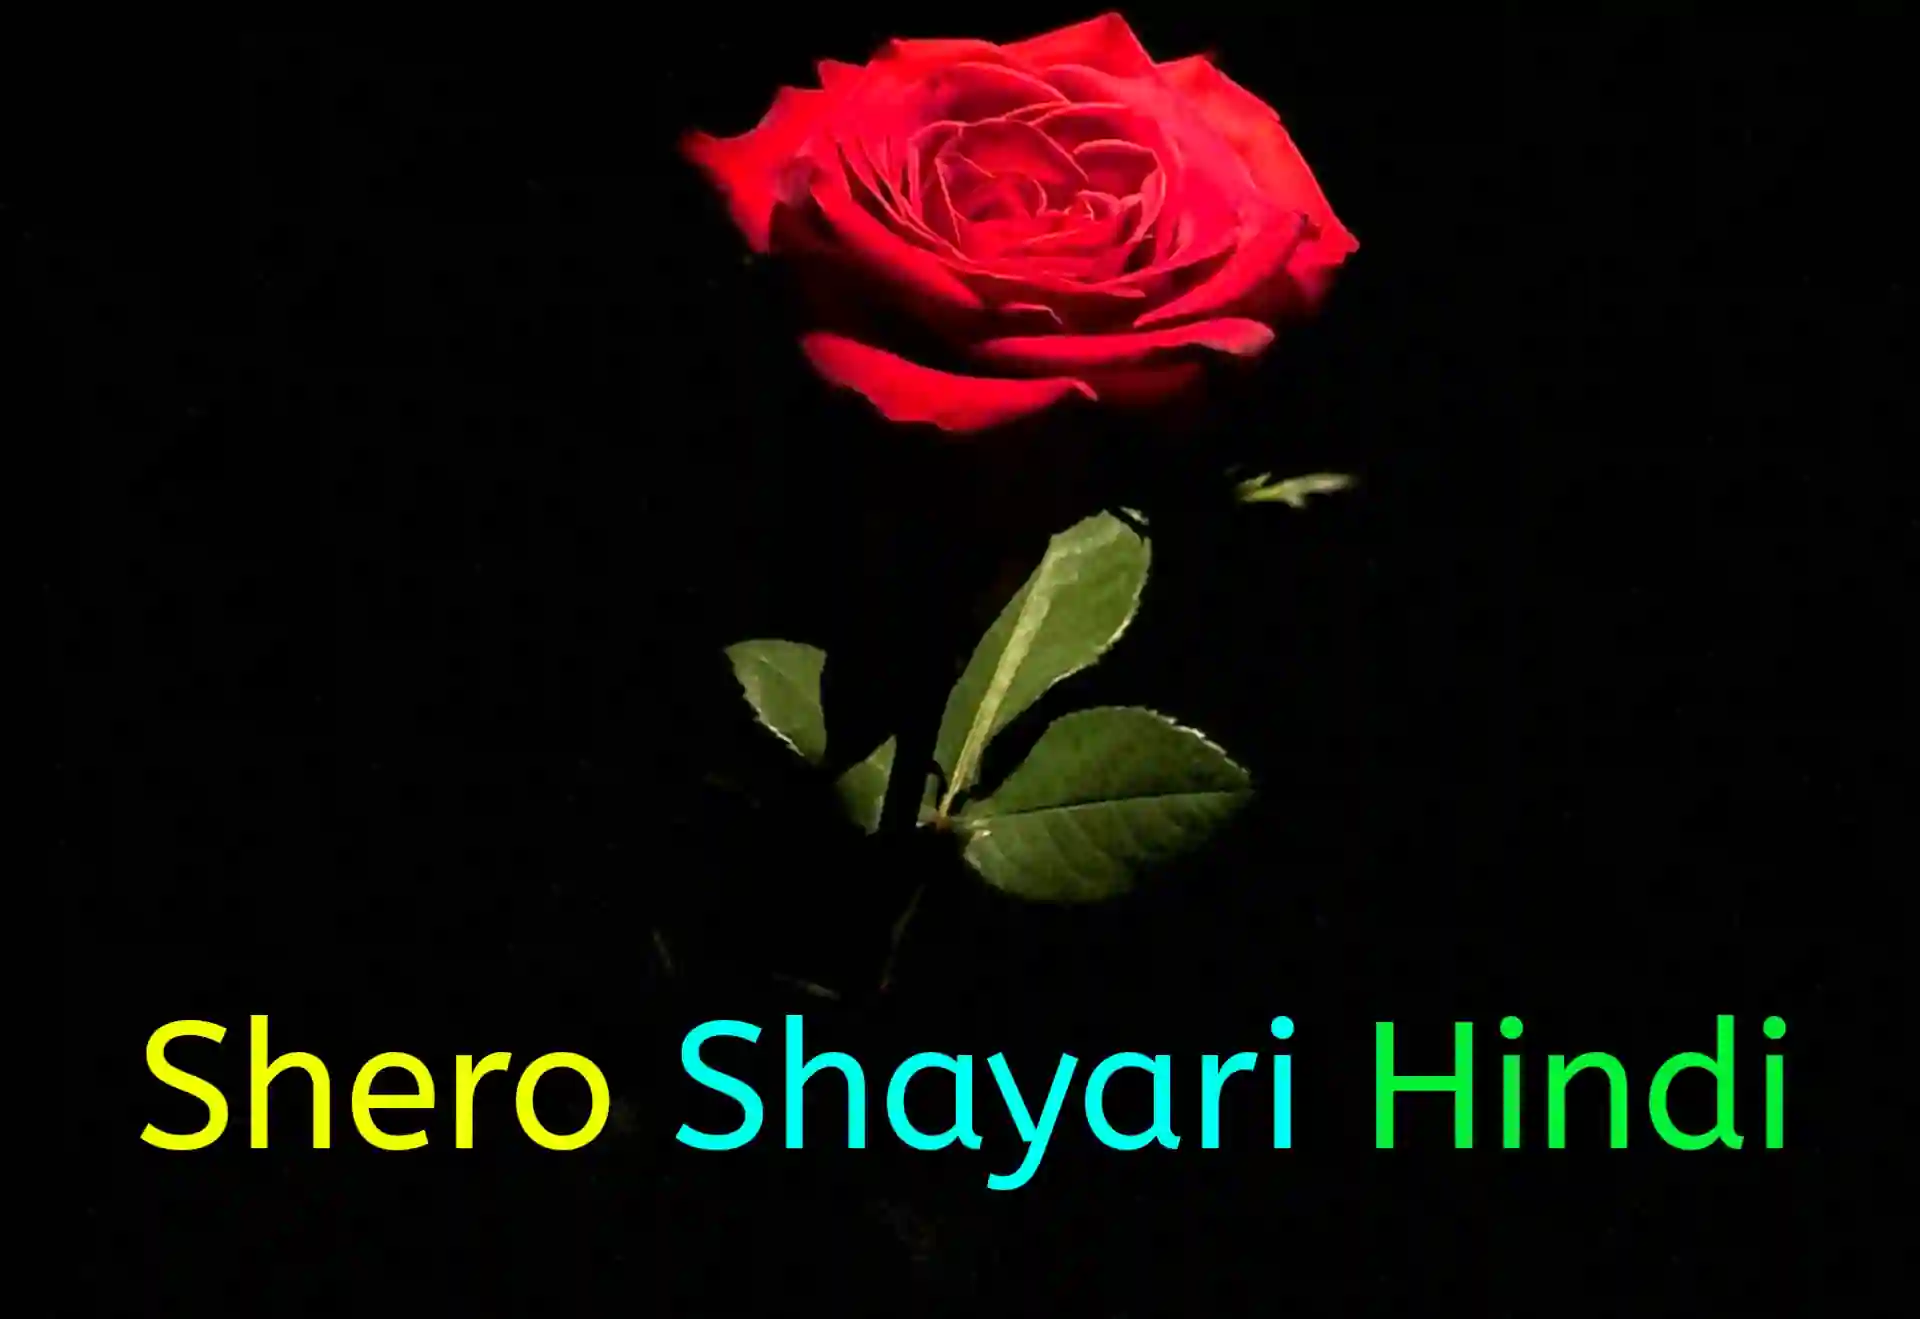 Shero Shayari